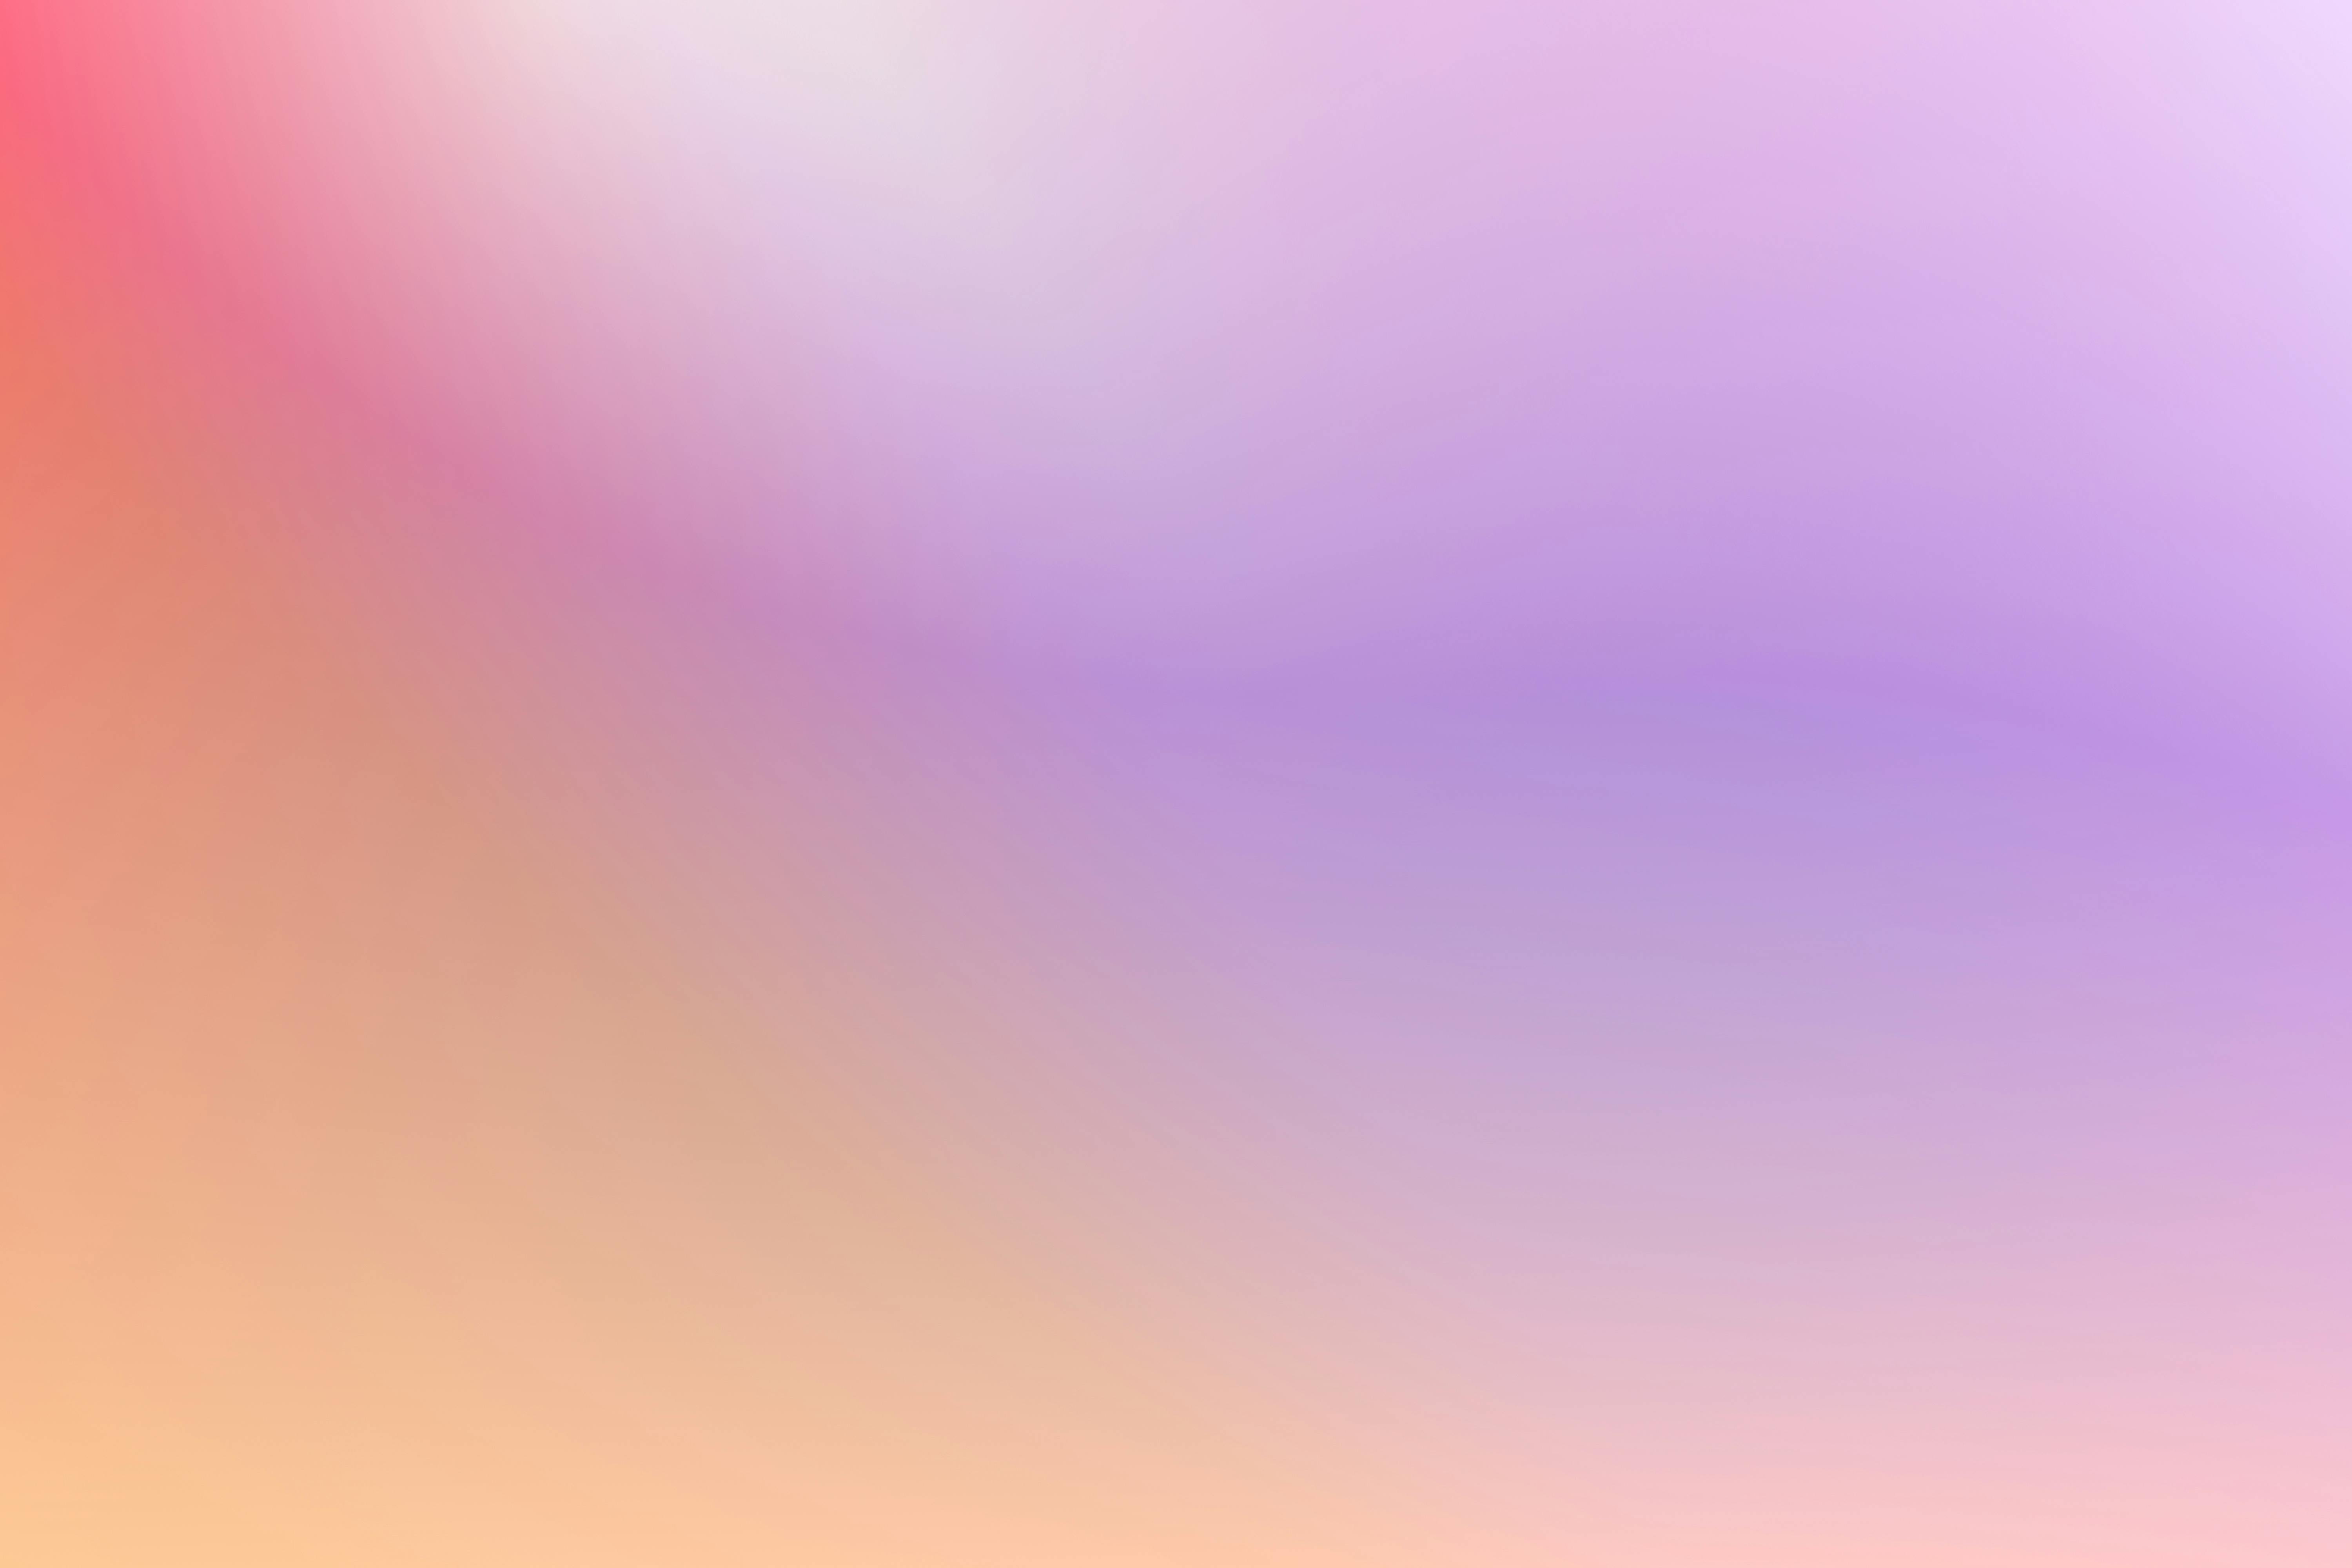 Hãy để mình mê mẩn với màu tím trầm và cam nồng nàn trên hình nền gradient tuyệt đẹp này. Với tính thẩm mỹ cao và sự trang trí tinh tế, hình nền gradient cam-tím này sẽ giúp nâng cao trải nghiệm của bạn khi sử dụng điện thoại hoặc máy tính bảng.